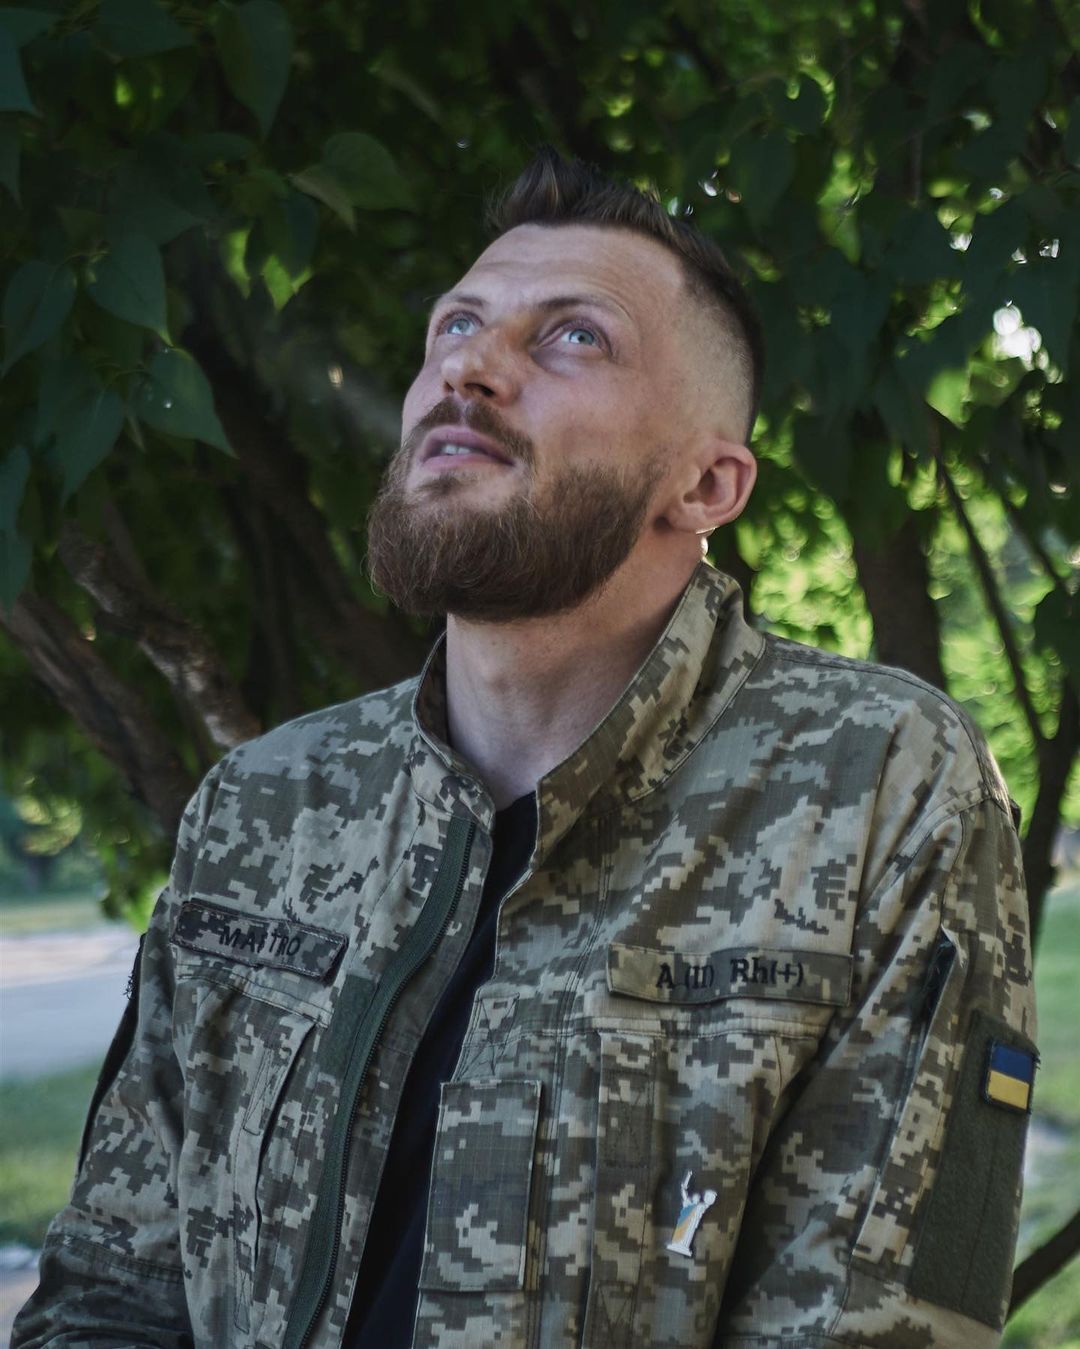 Воин ВСУ Александр Ремез назвал певца, который полностью перешел на украинский язык: многие общаются только на камеру